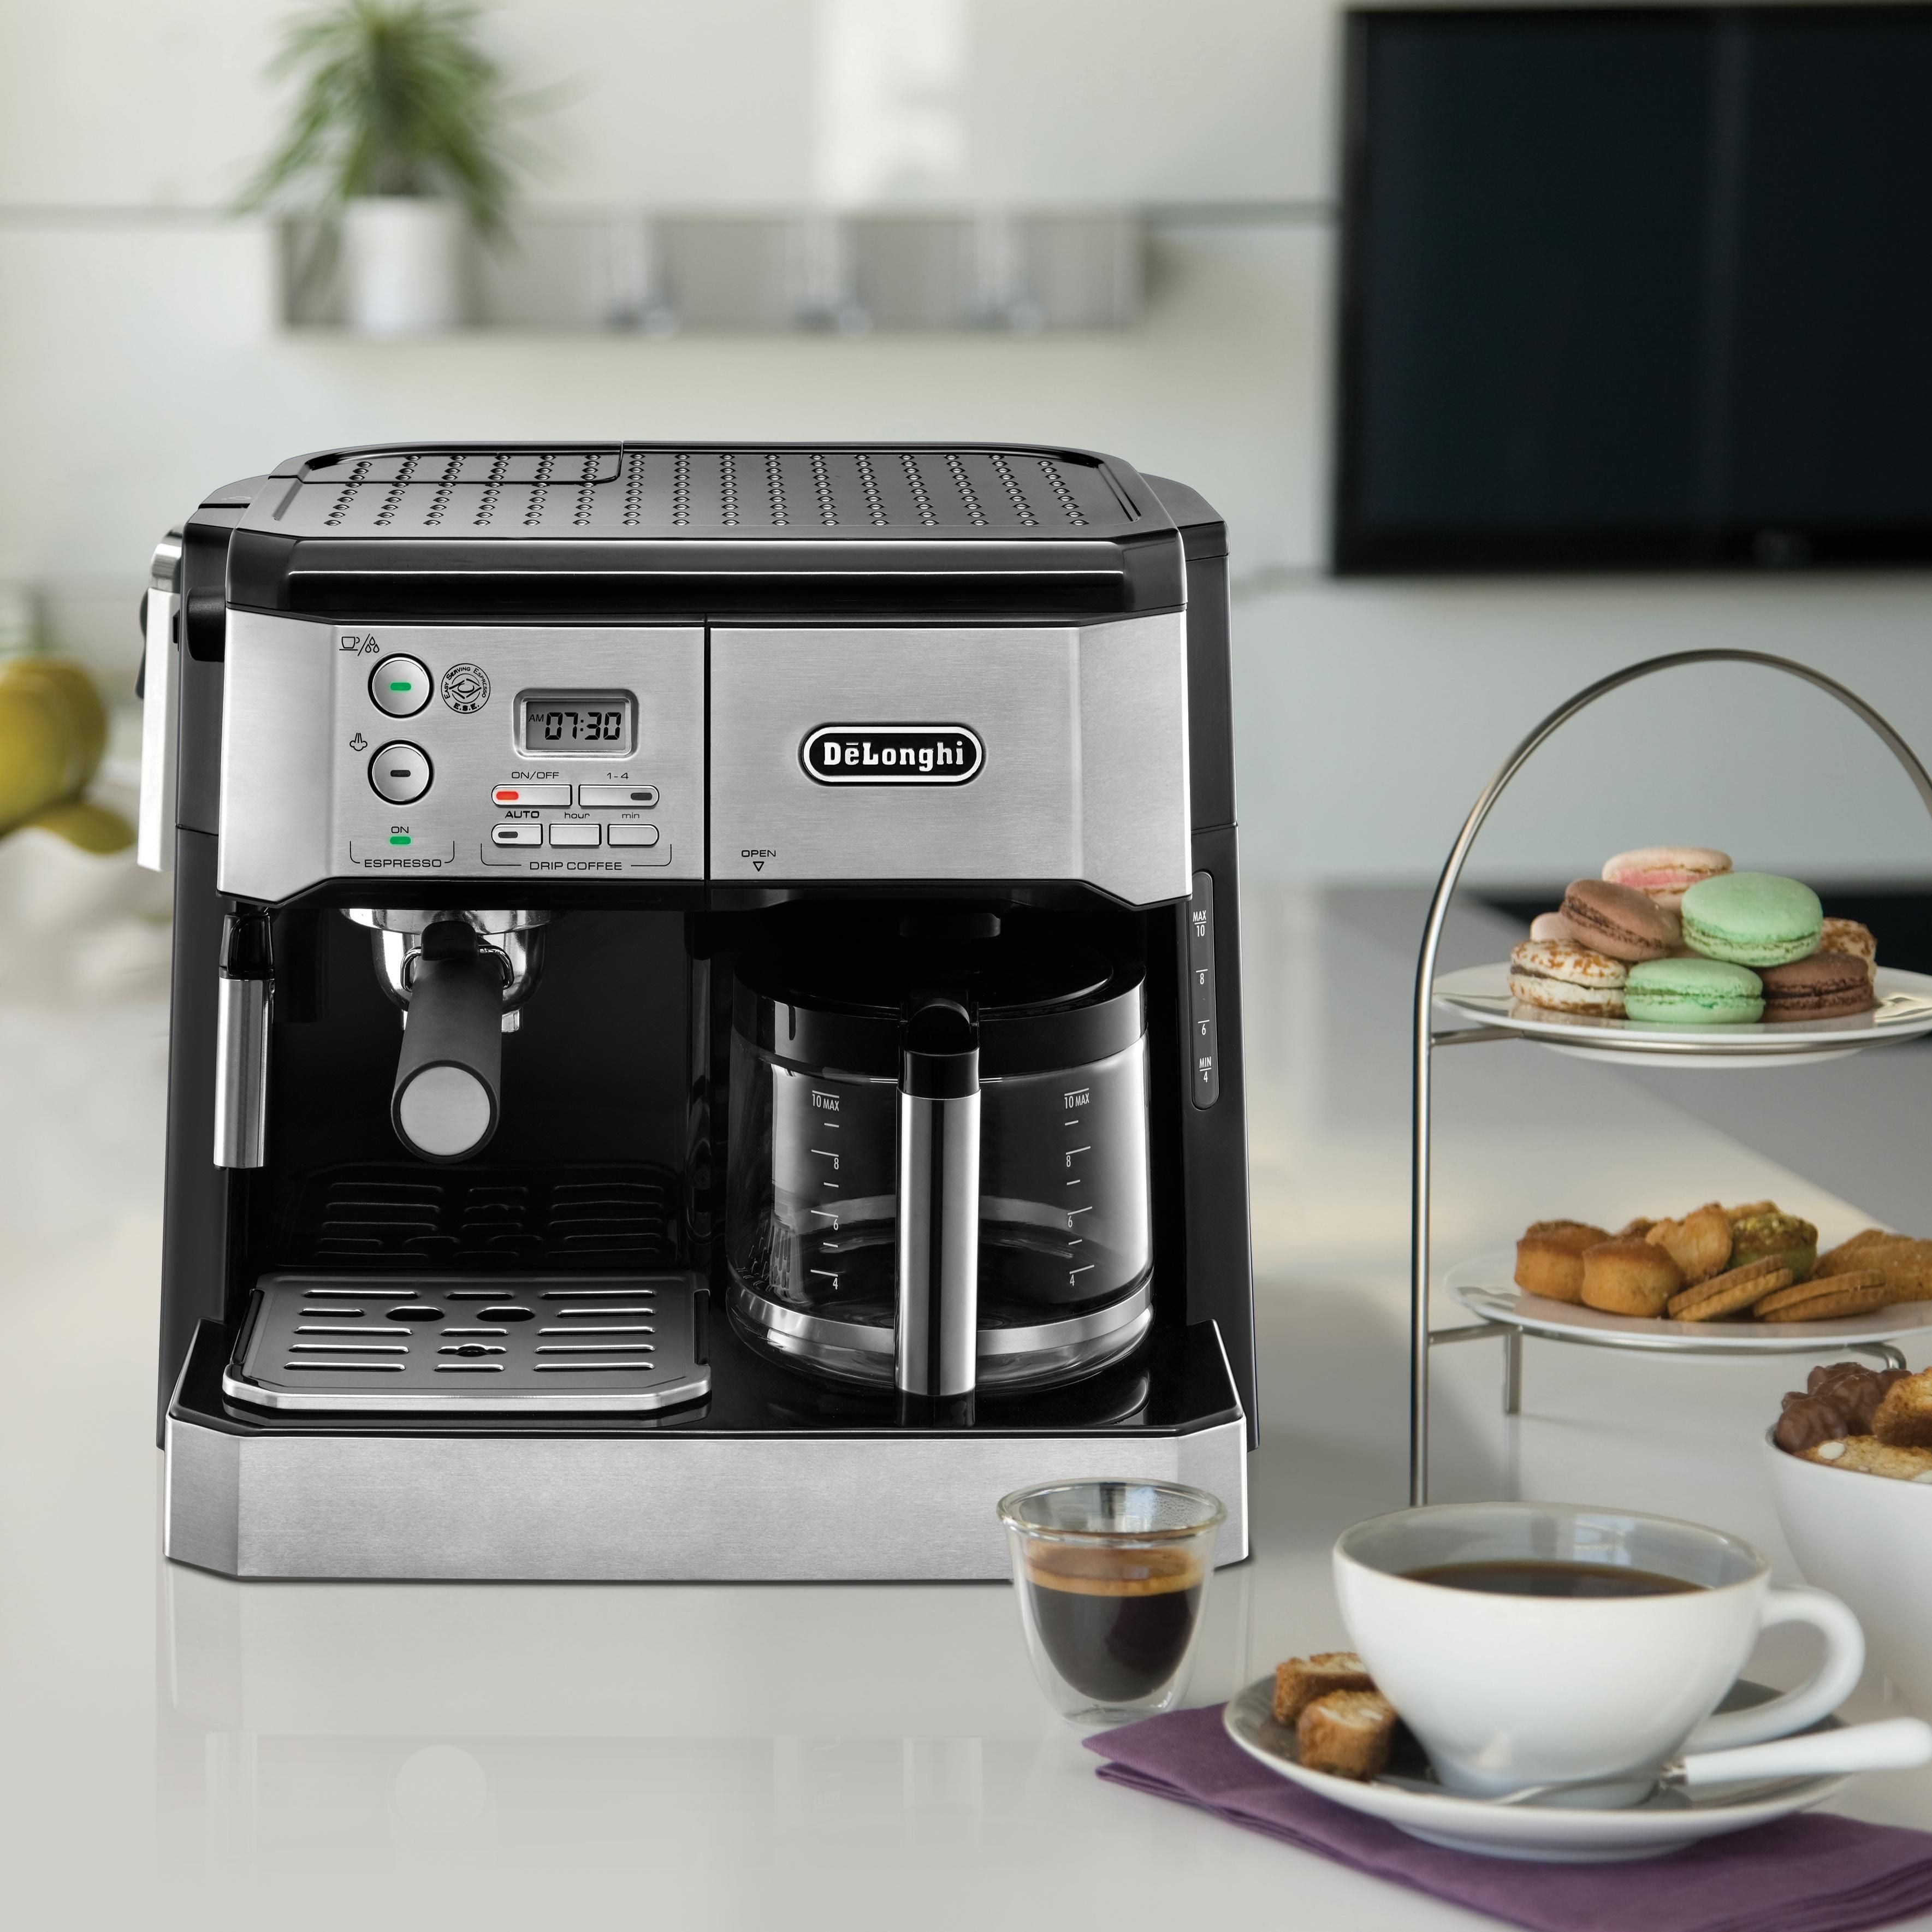 ماكينة قهوة ديلونجي مزدوجة الوظائف ، اسبريسو والقهوة بالتنقيط